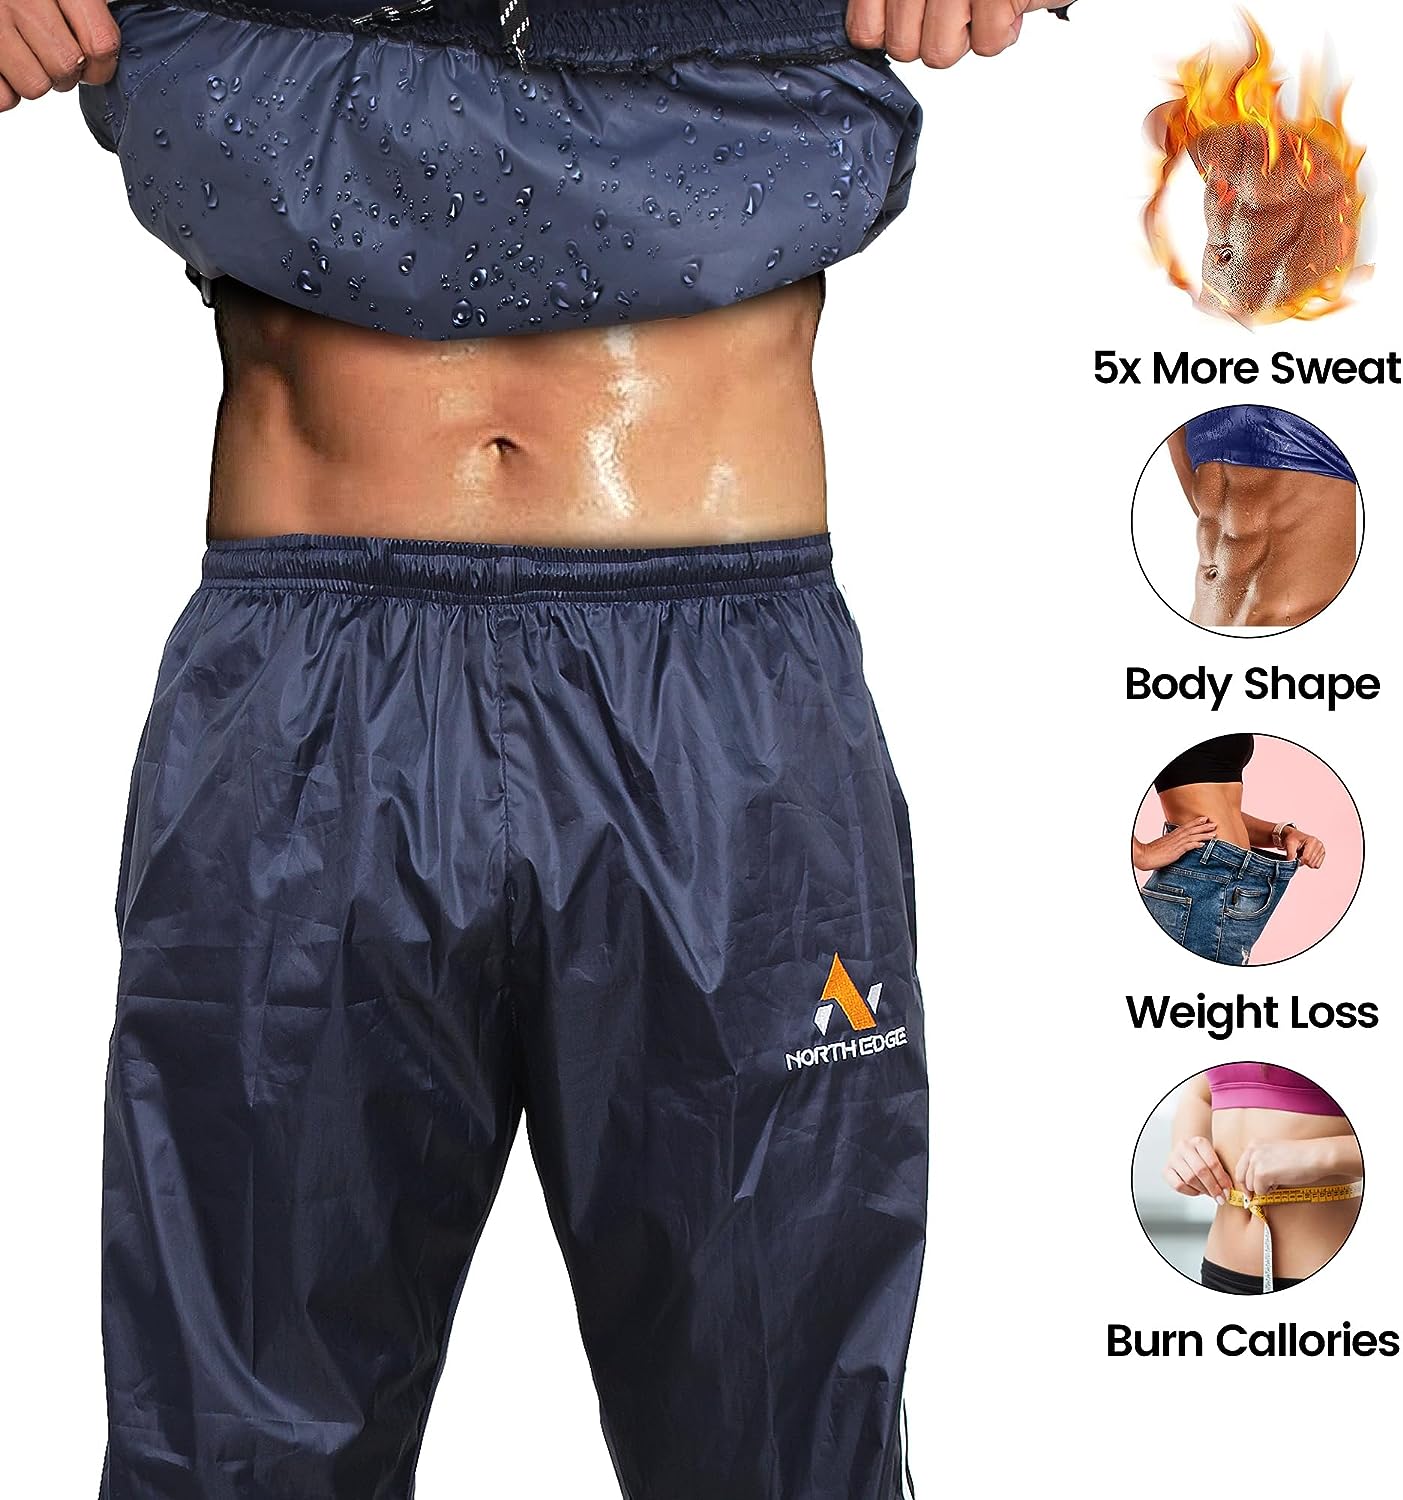 NORTH EDGE Heavy Duty Sauna Sweat Suit Fitness Wear, Jogging Suit Exerise Wear, Gym Wear